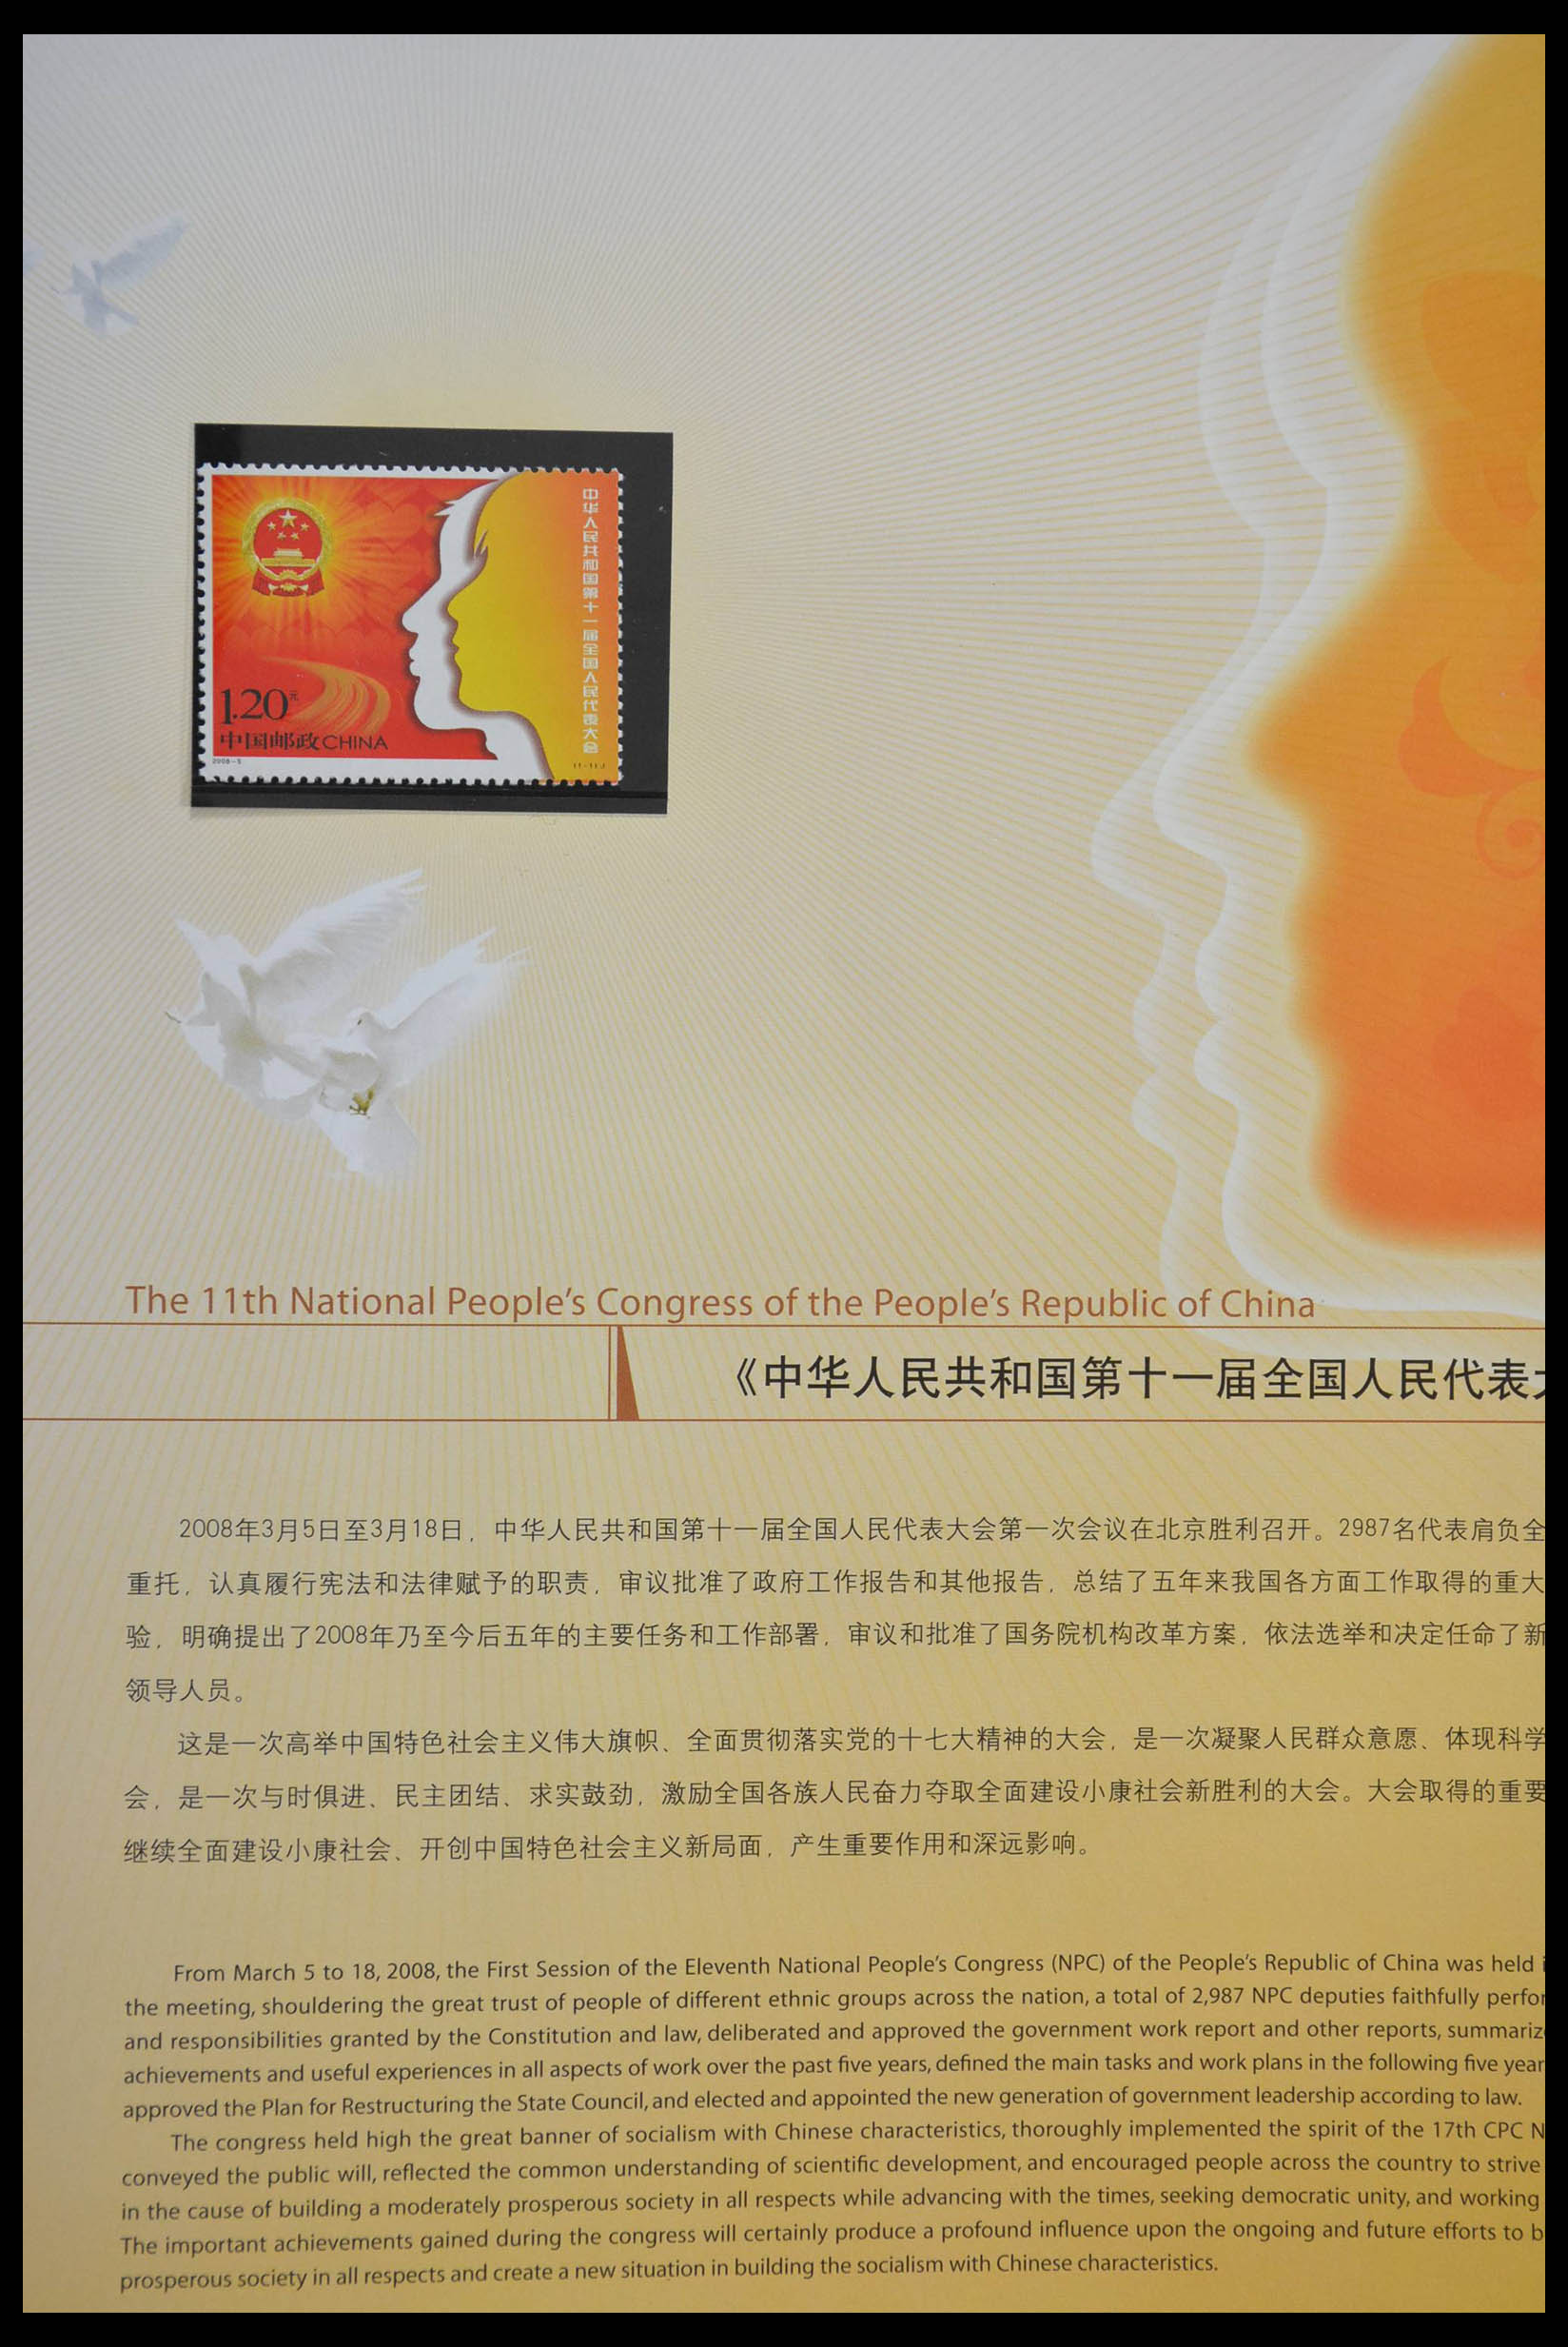 28622 202 - 28622 China 1987-2008.